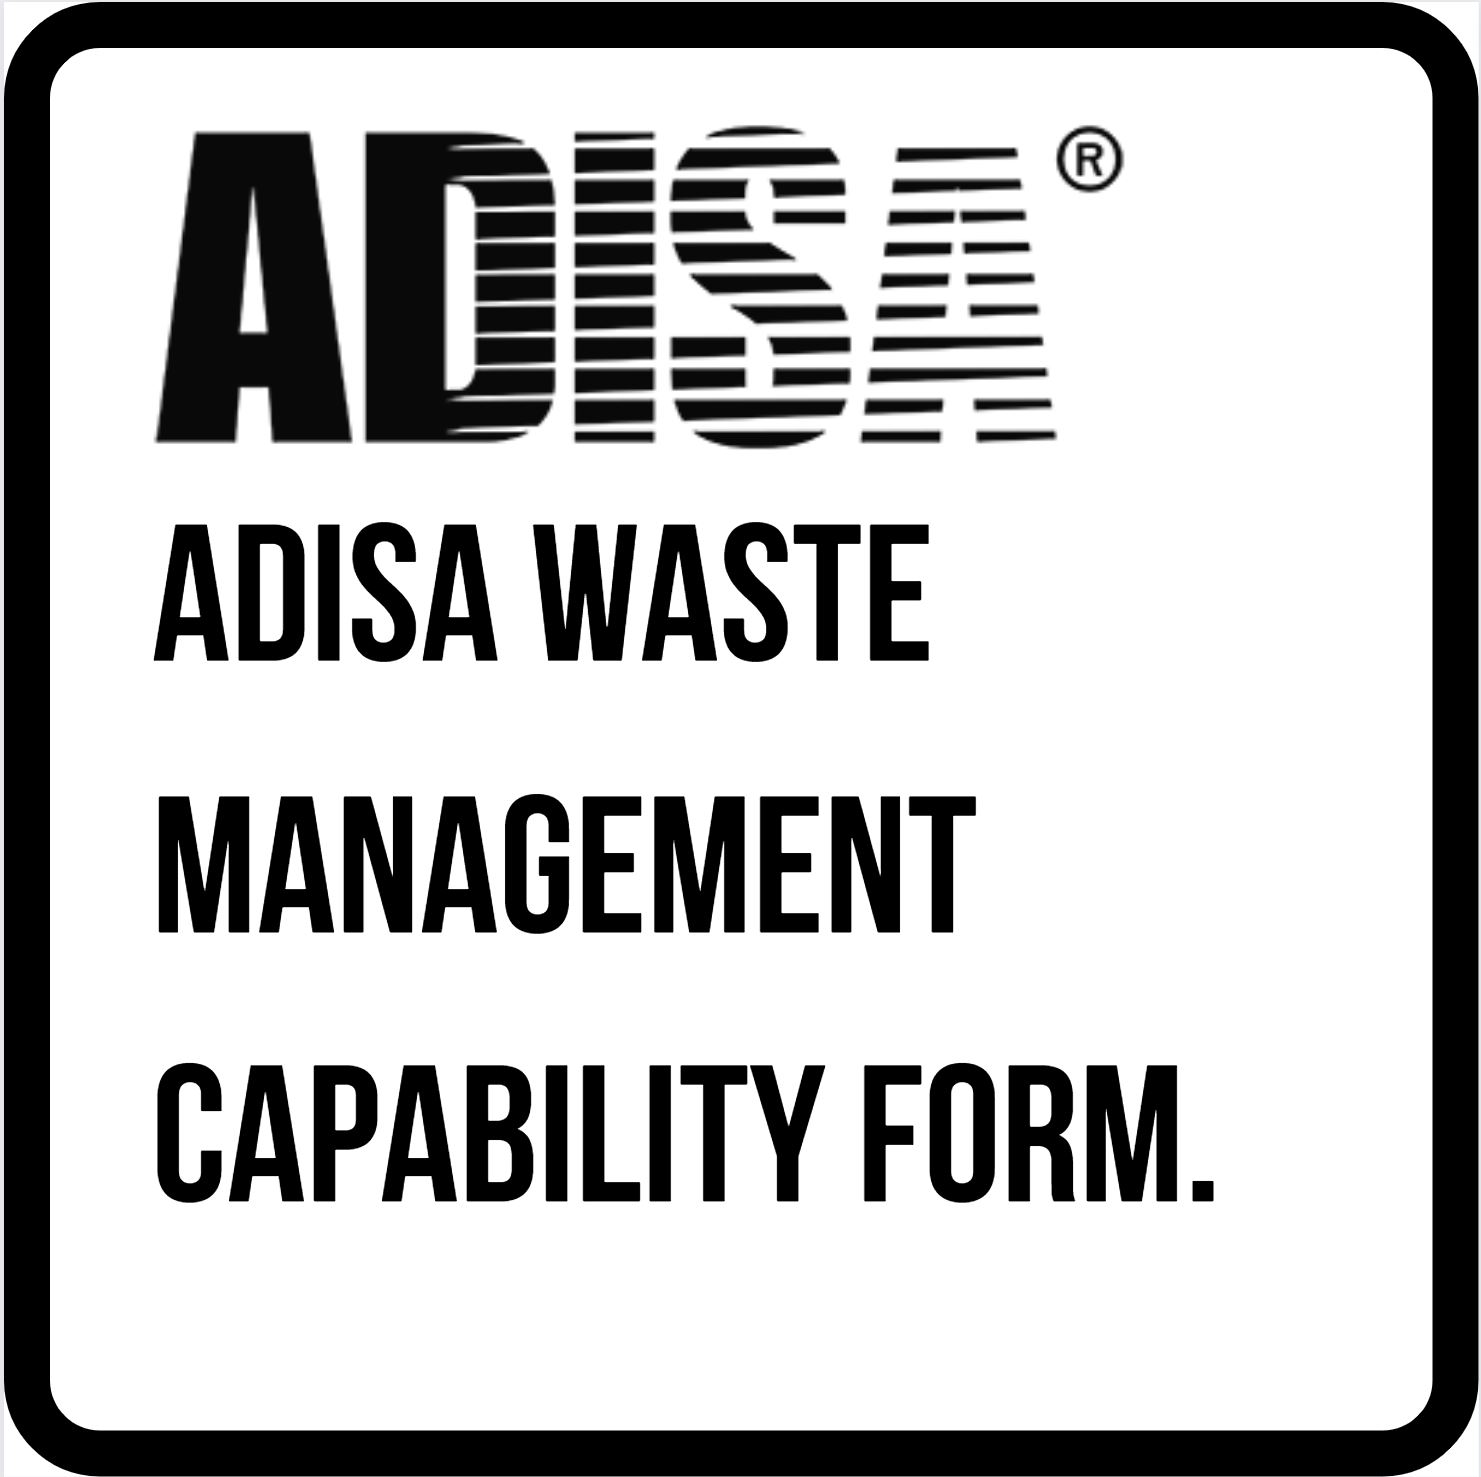 ADISA Waste Management Capability form.